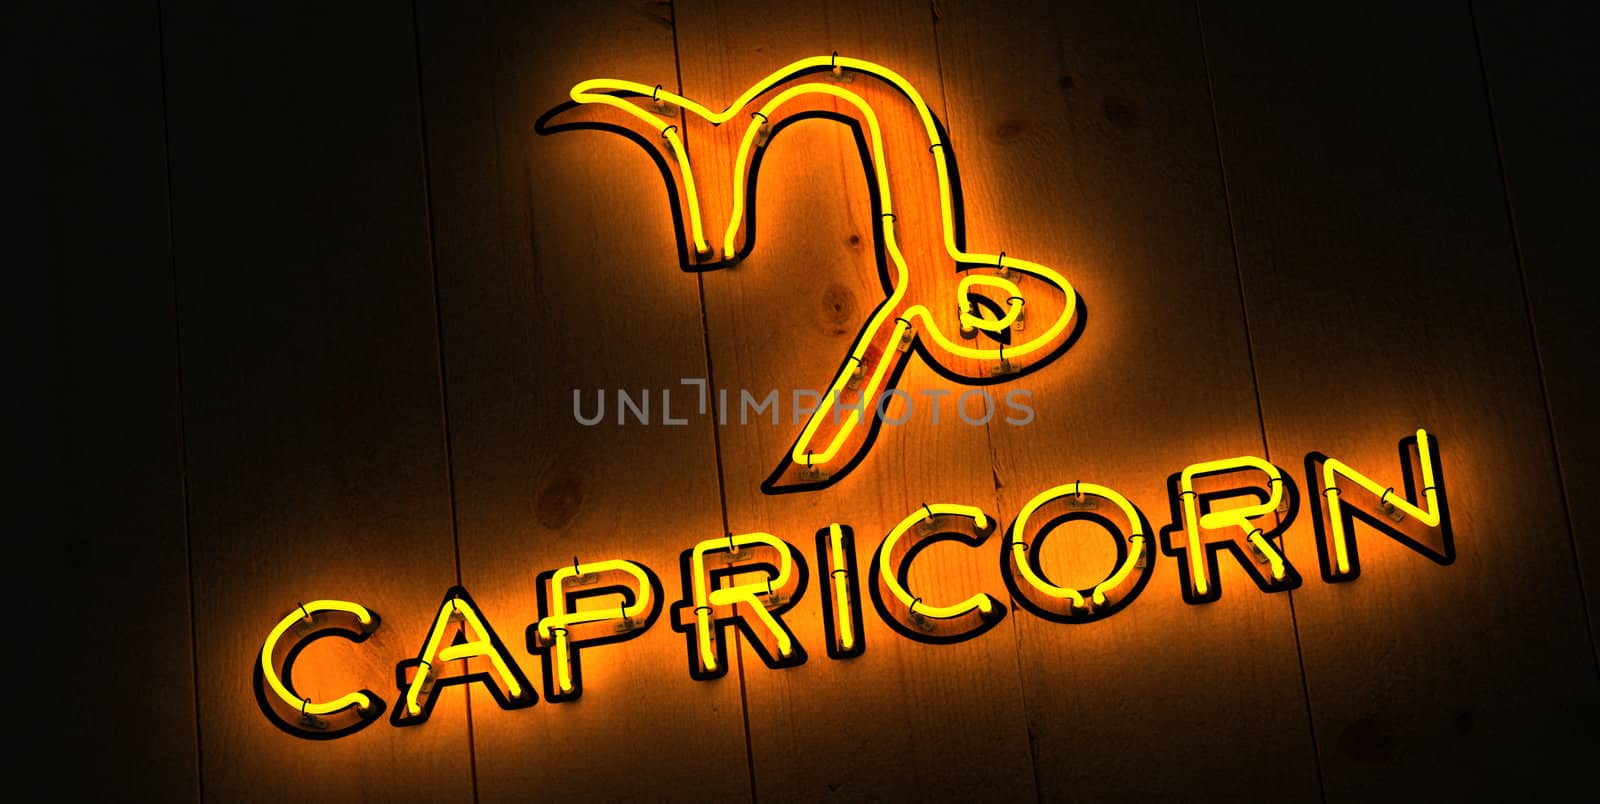 Capricorn Zodiac Sign in Neon by rossstudio